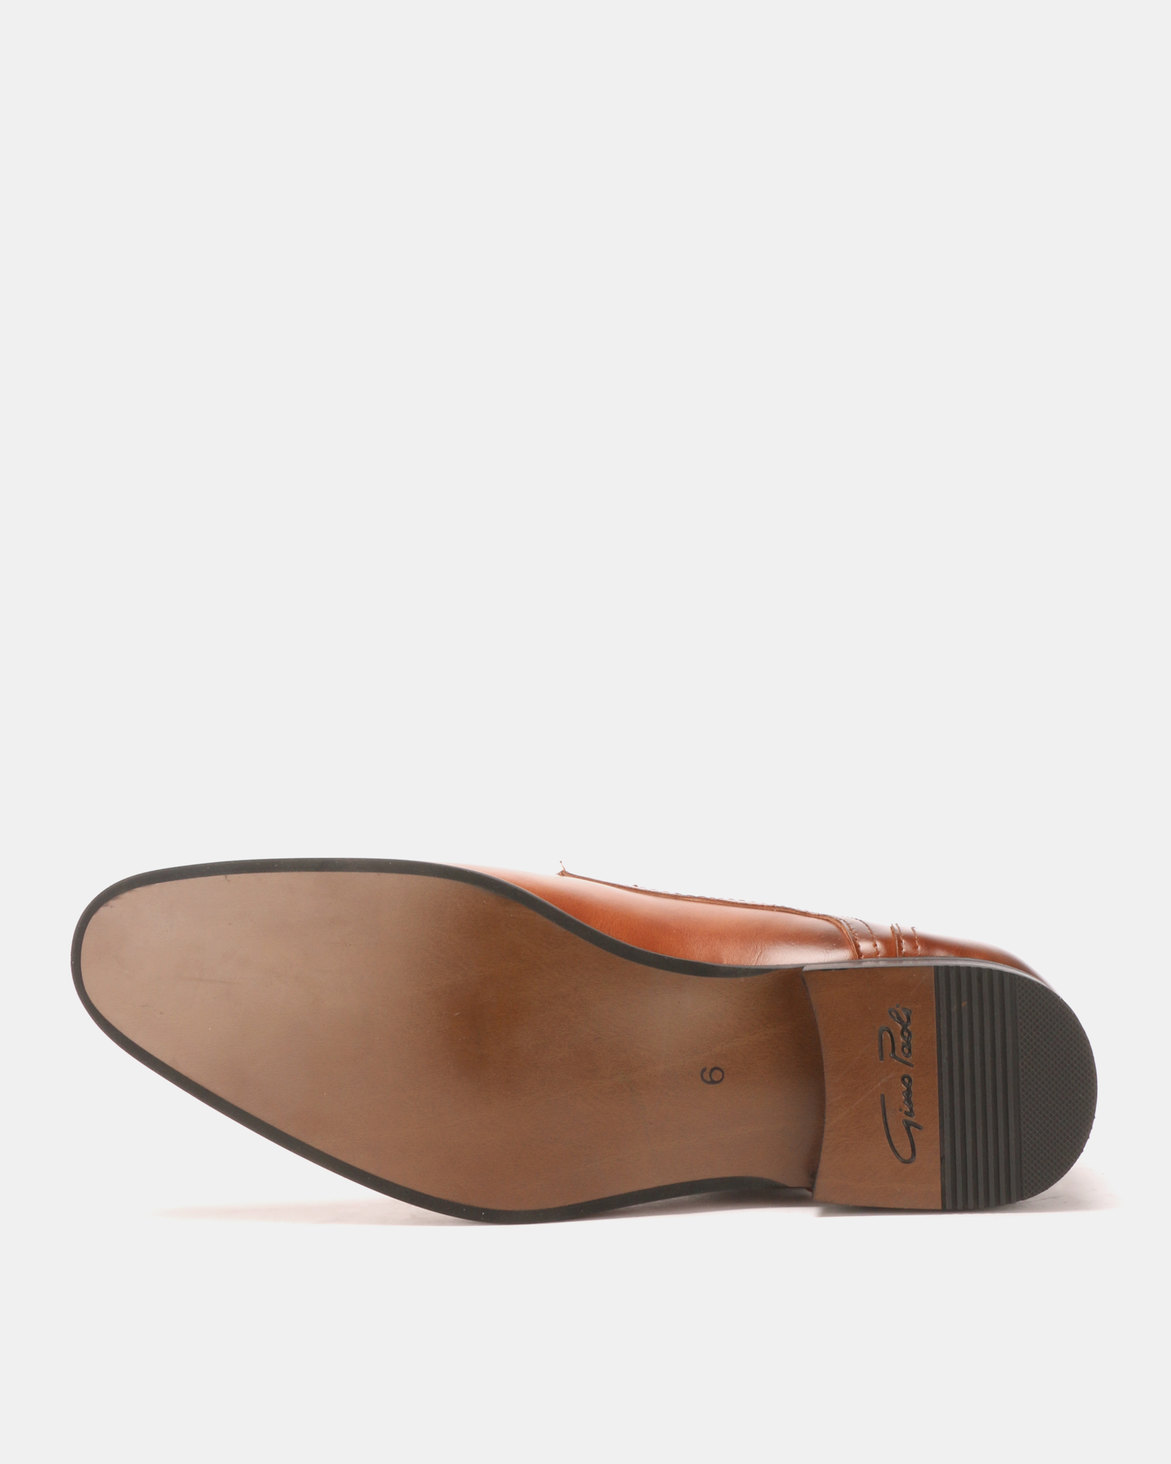 Gino Paoli Monk Formal Shoes Tan | Zando